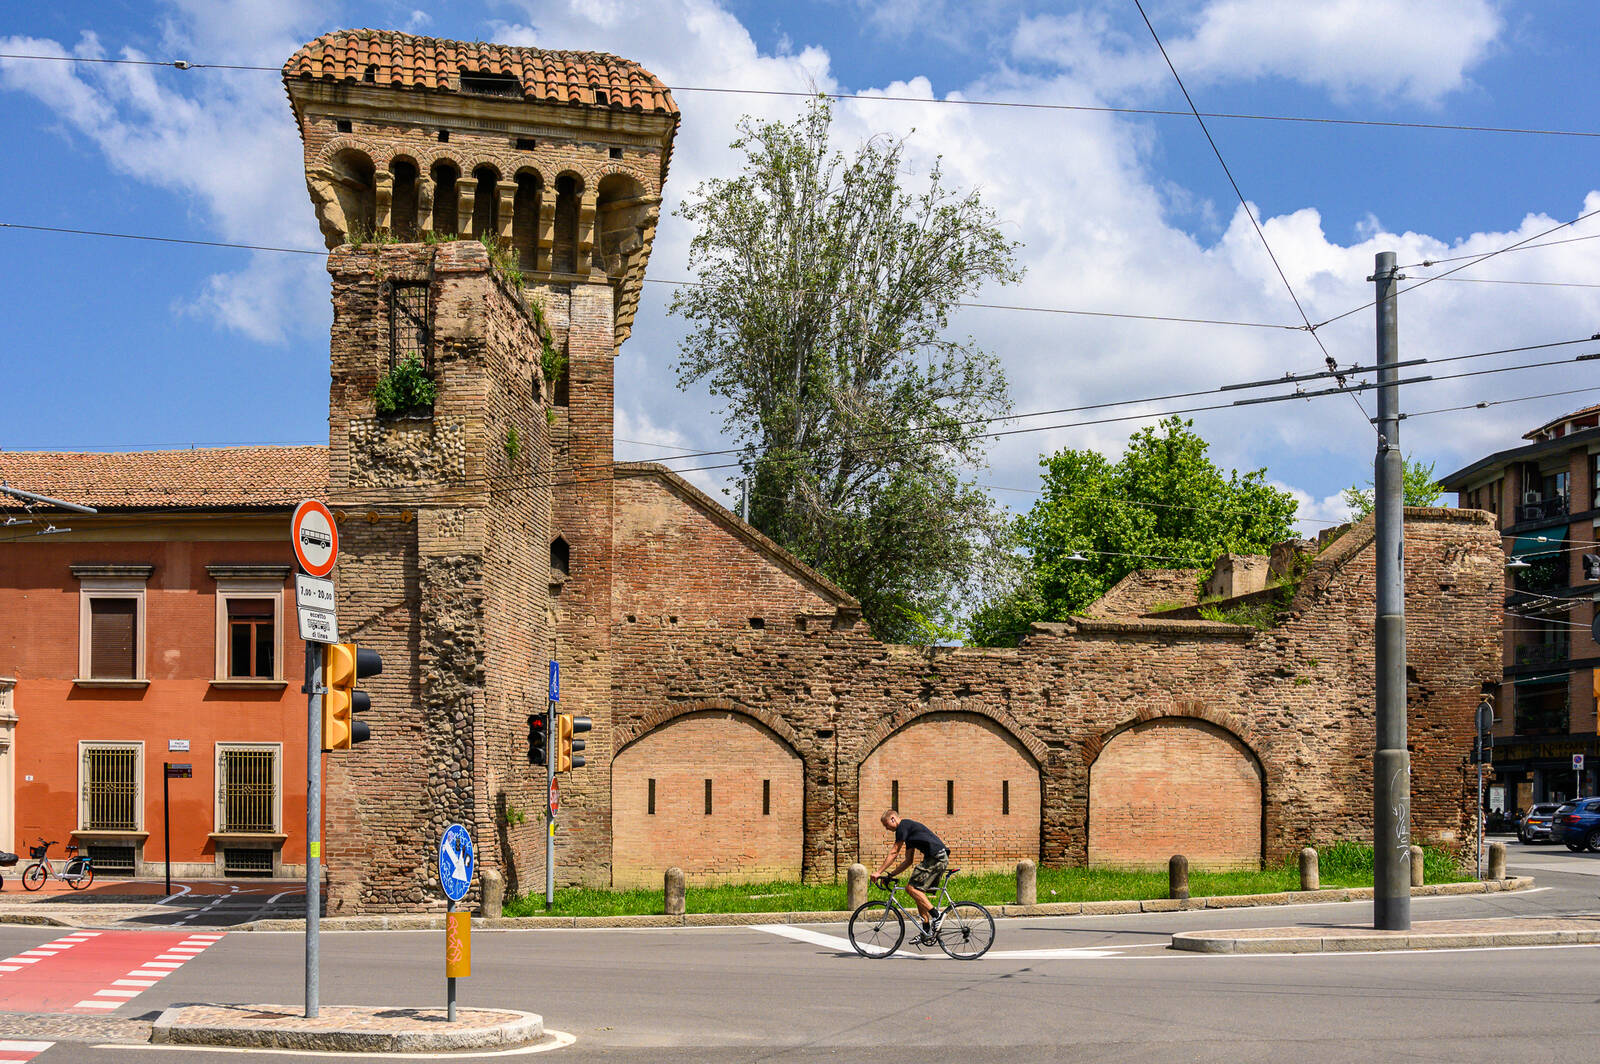 Image of Porta San Donato by Sue Wolfe